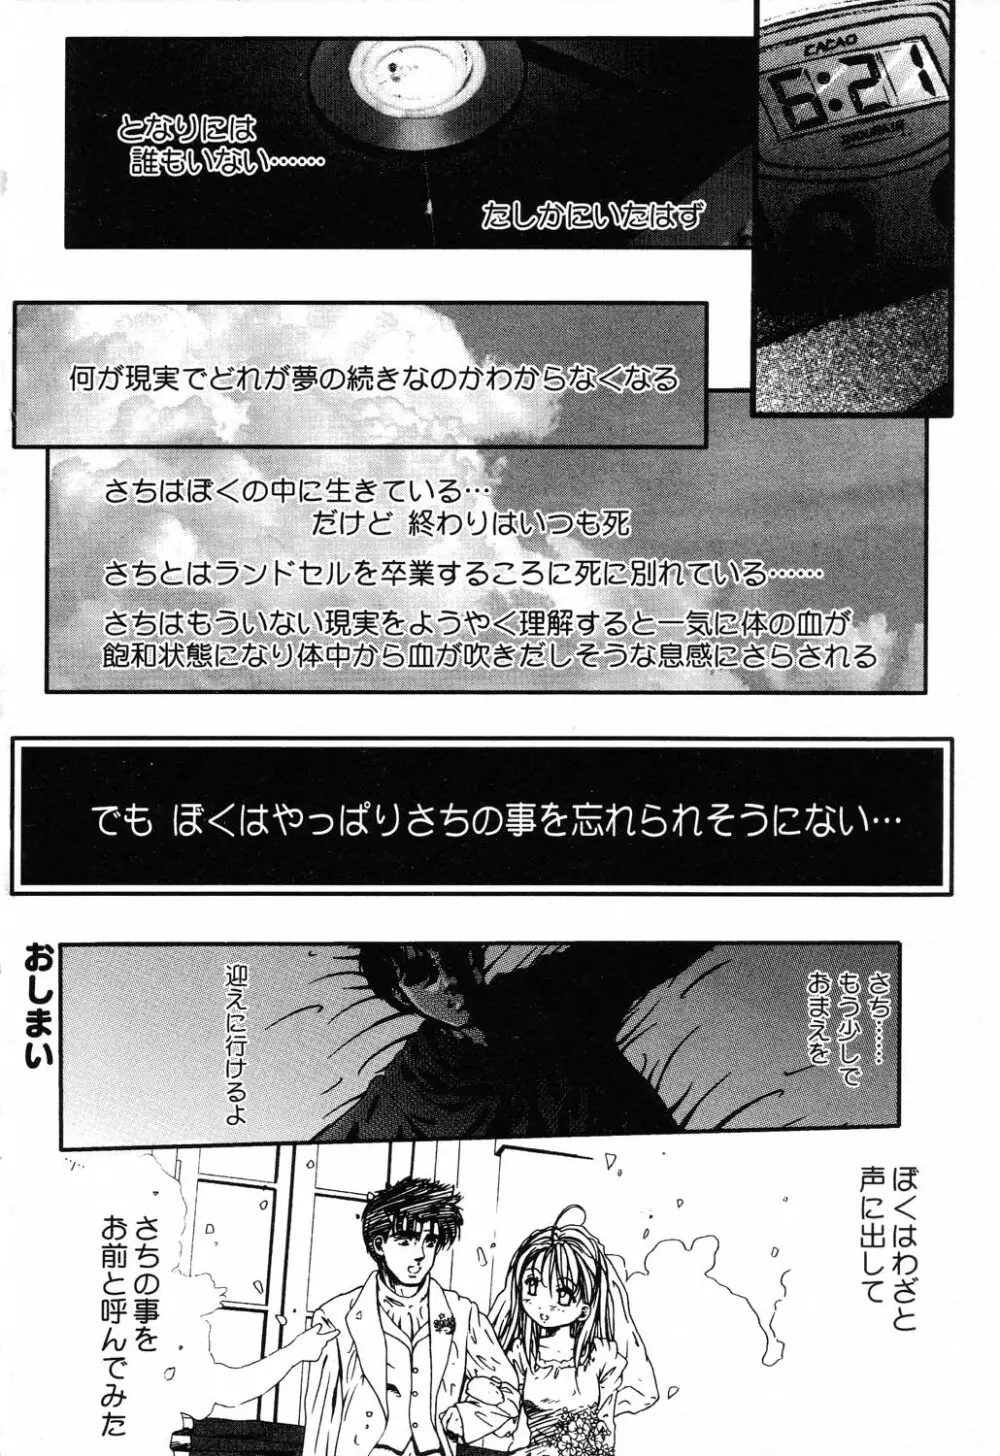 ぴゅあぷちっと Vol.5 129ページ